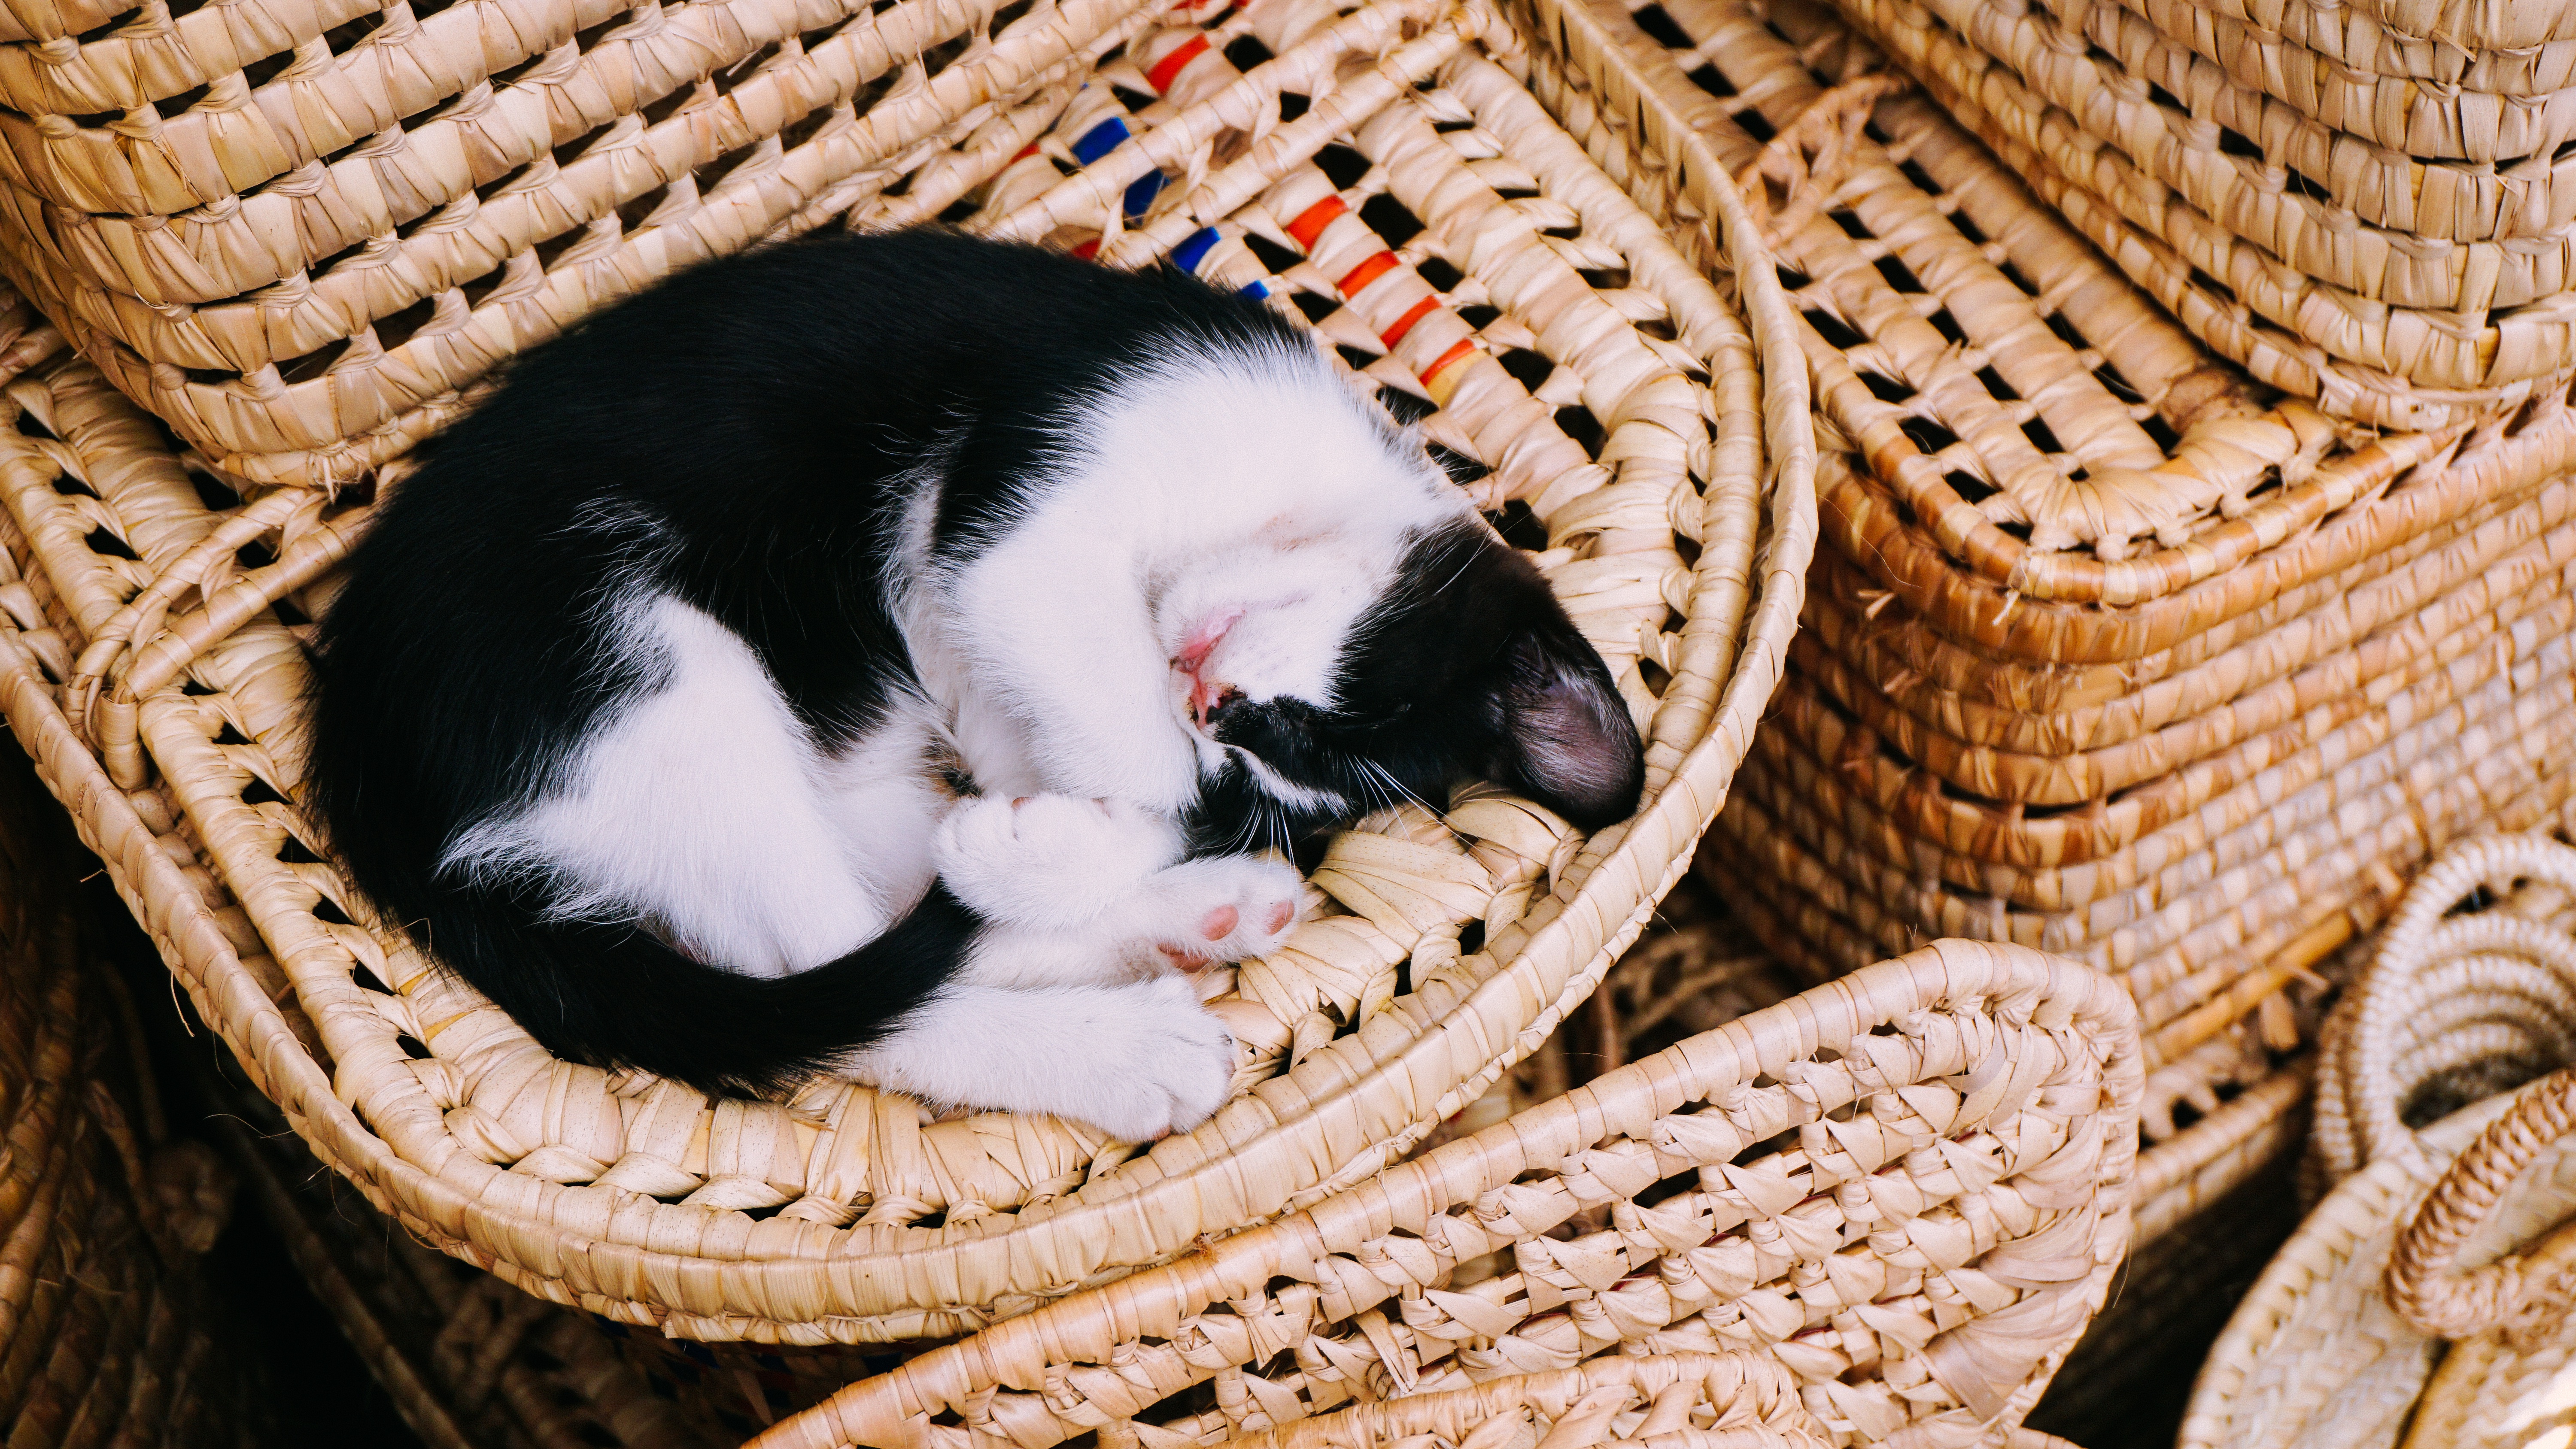 Download mobile wallpaper Cats, Cat, Kitten, Animal, Basket, Sleeping, Baby Animal for free.